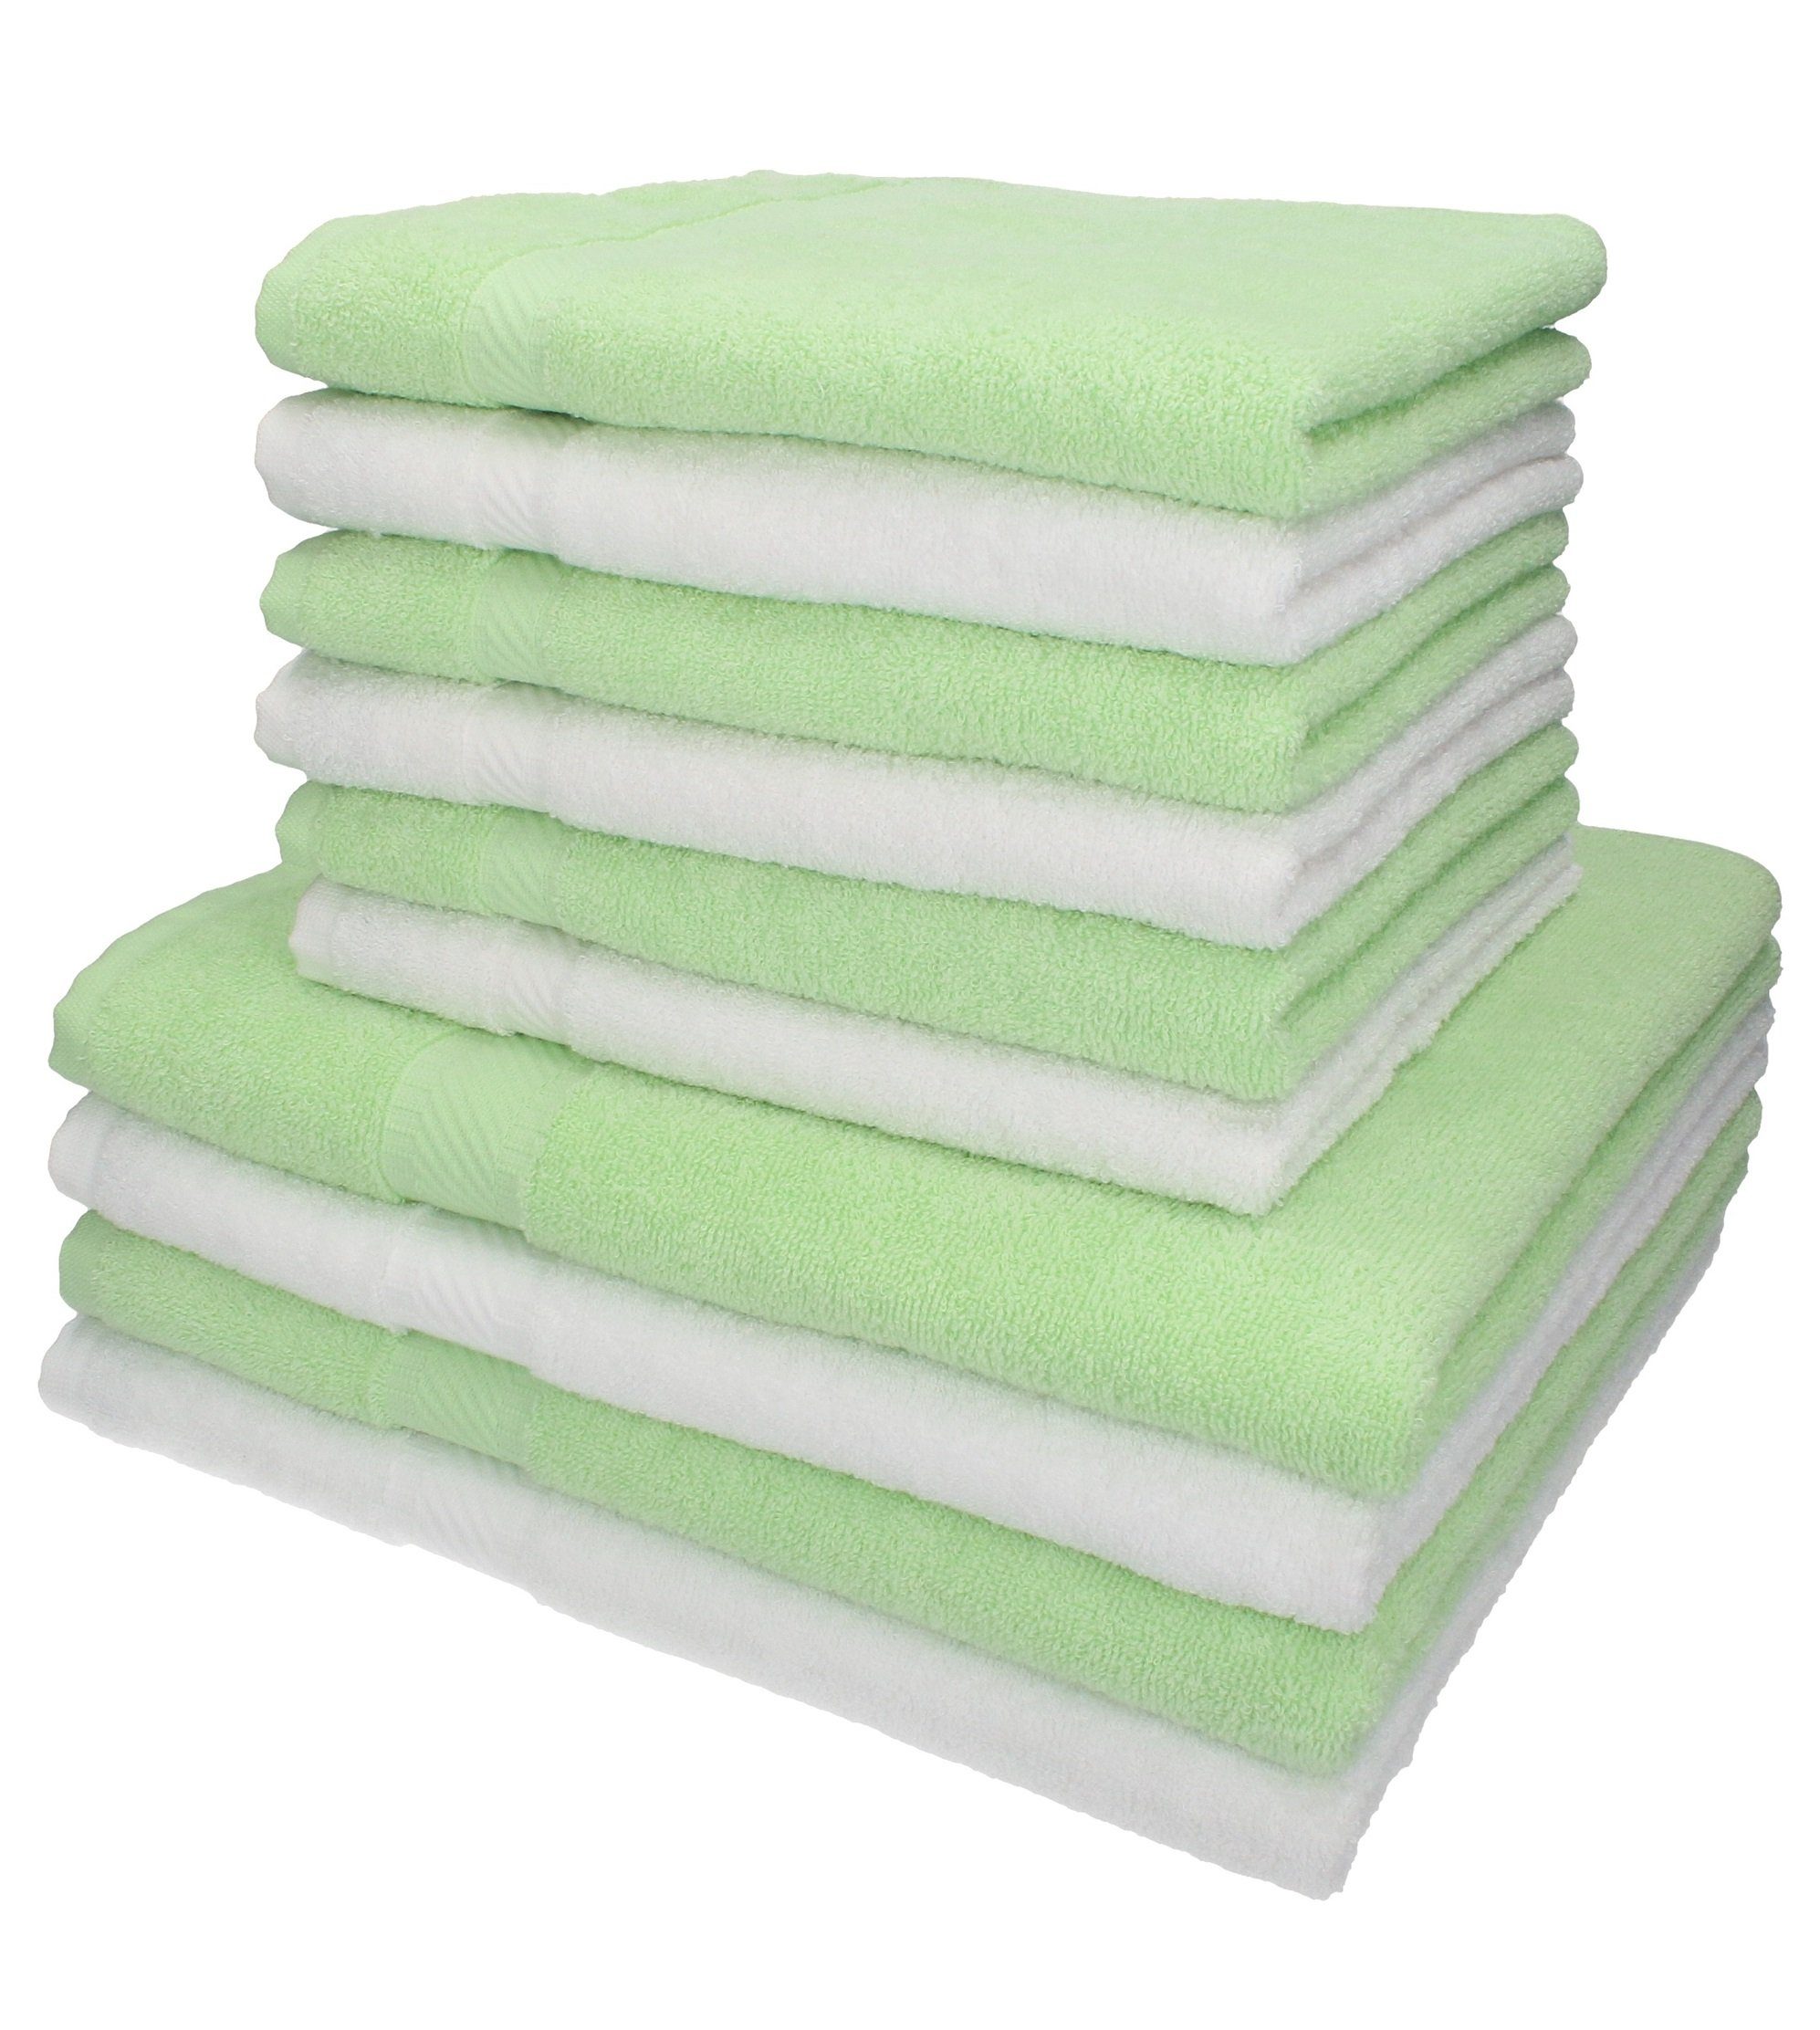 Betz Handtuch Set 10-TLG. Handtuch-Set Palermo 100%Baumwolle 4 Duschtücher 6 Handtücher Farbe weiß und grün, 100% Baumwolle